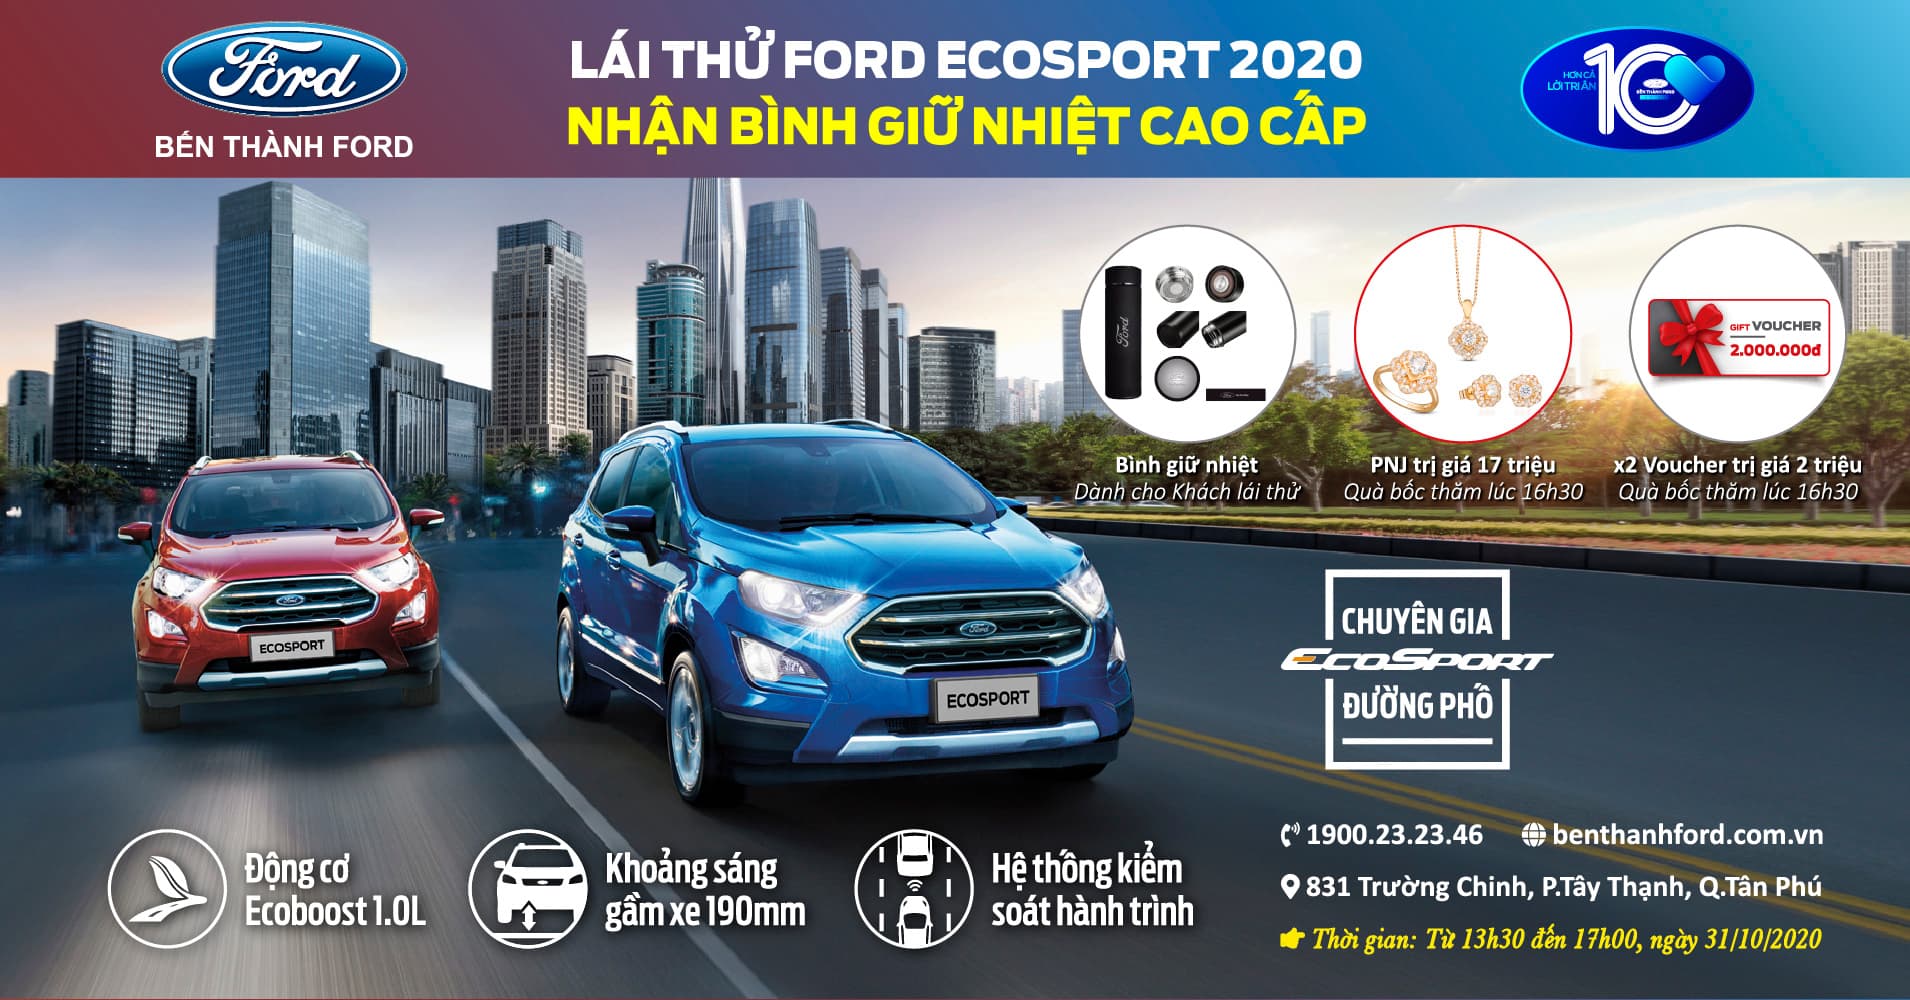 Lái thử Ford Ecosport 2020 nhận bình giữ nhiệt